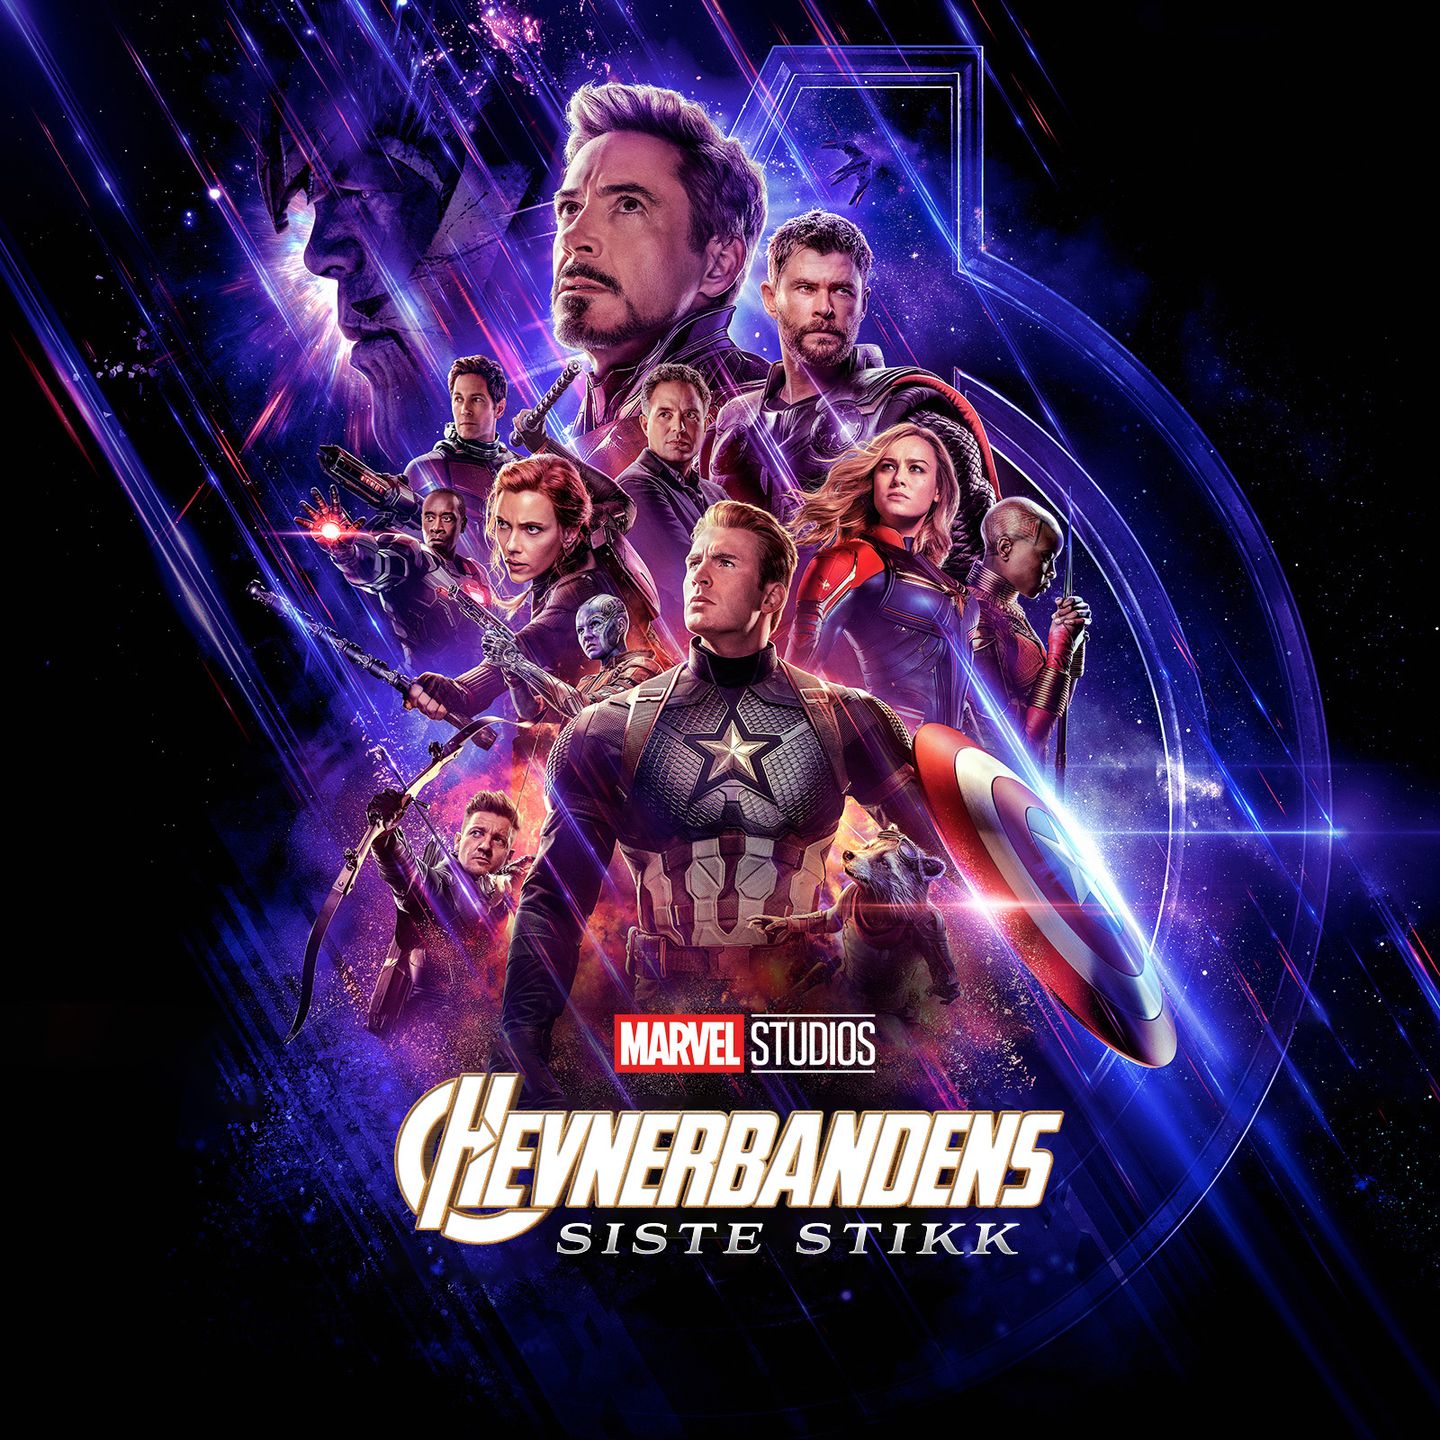 Hvenderbandens siste stikk kunne vært en norsk tittel for Avengers: Endgame